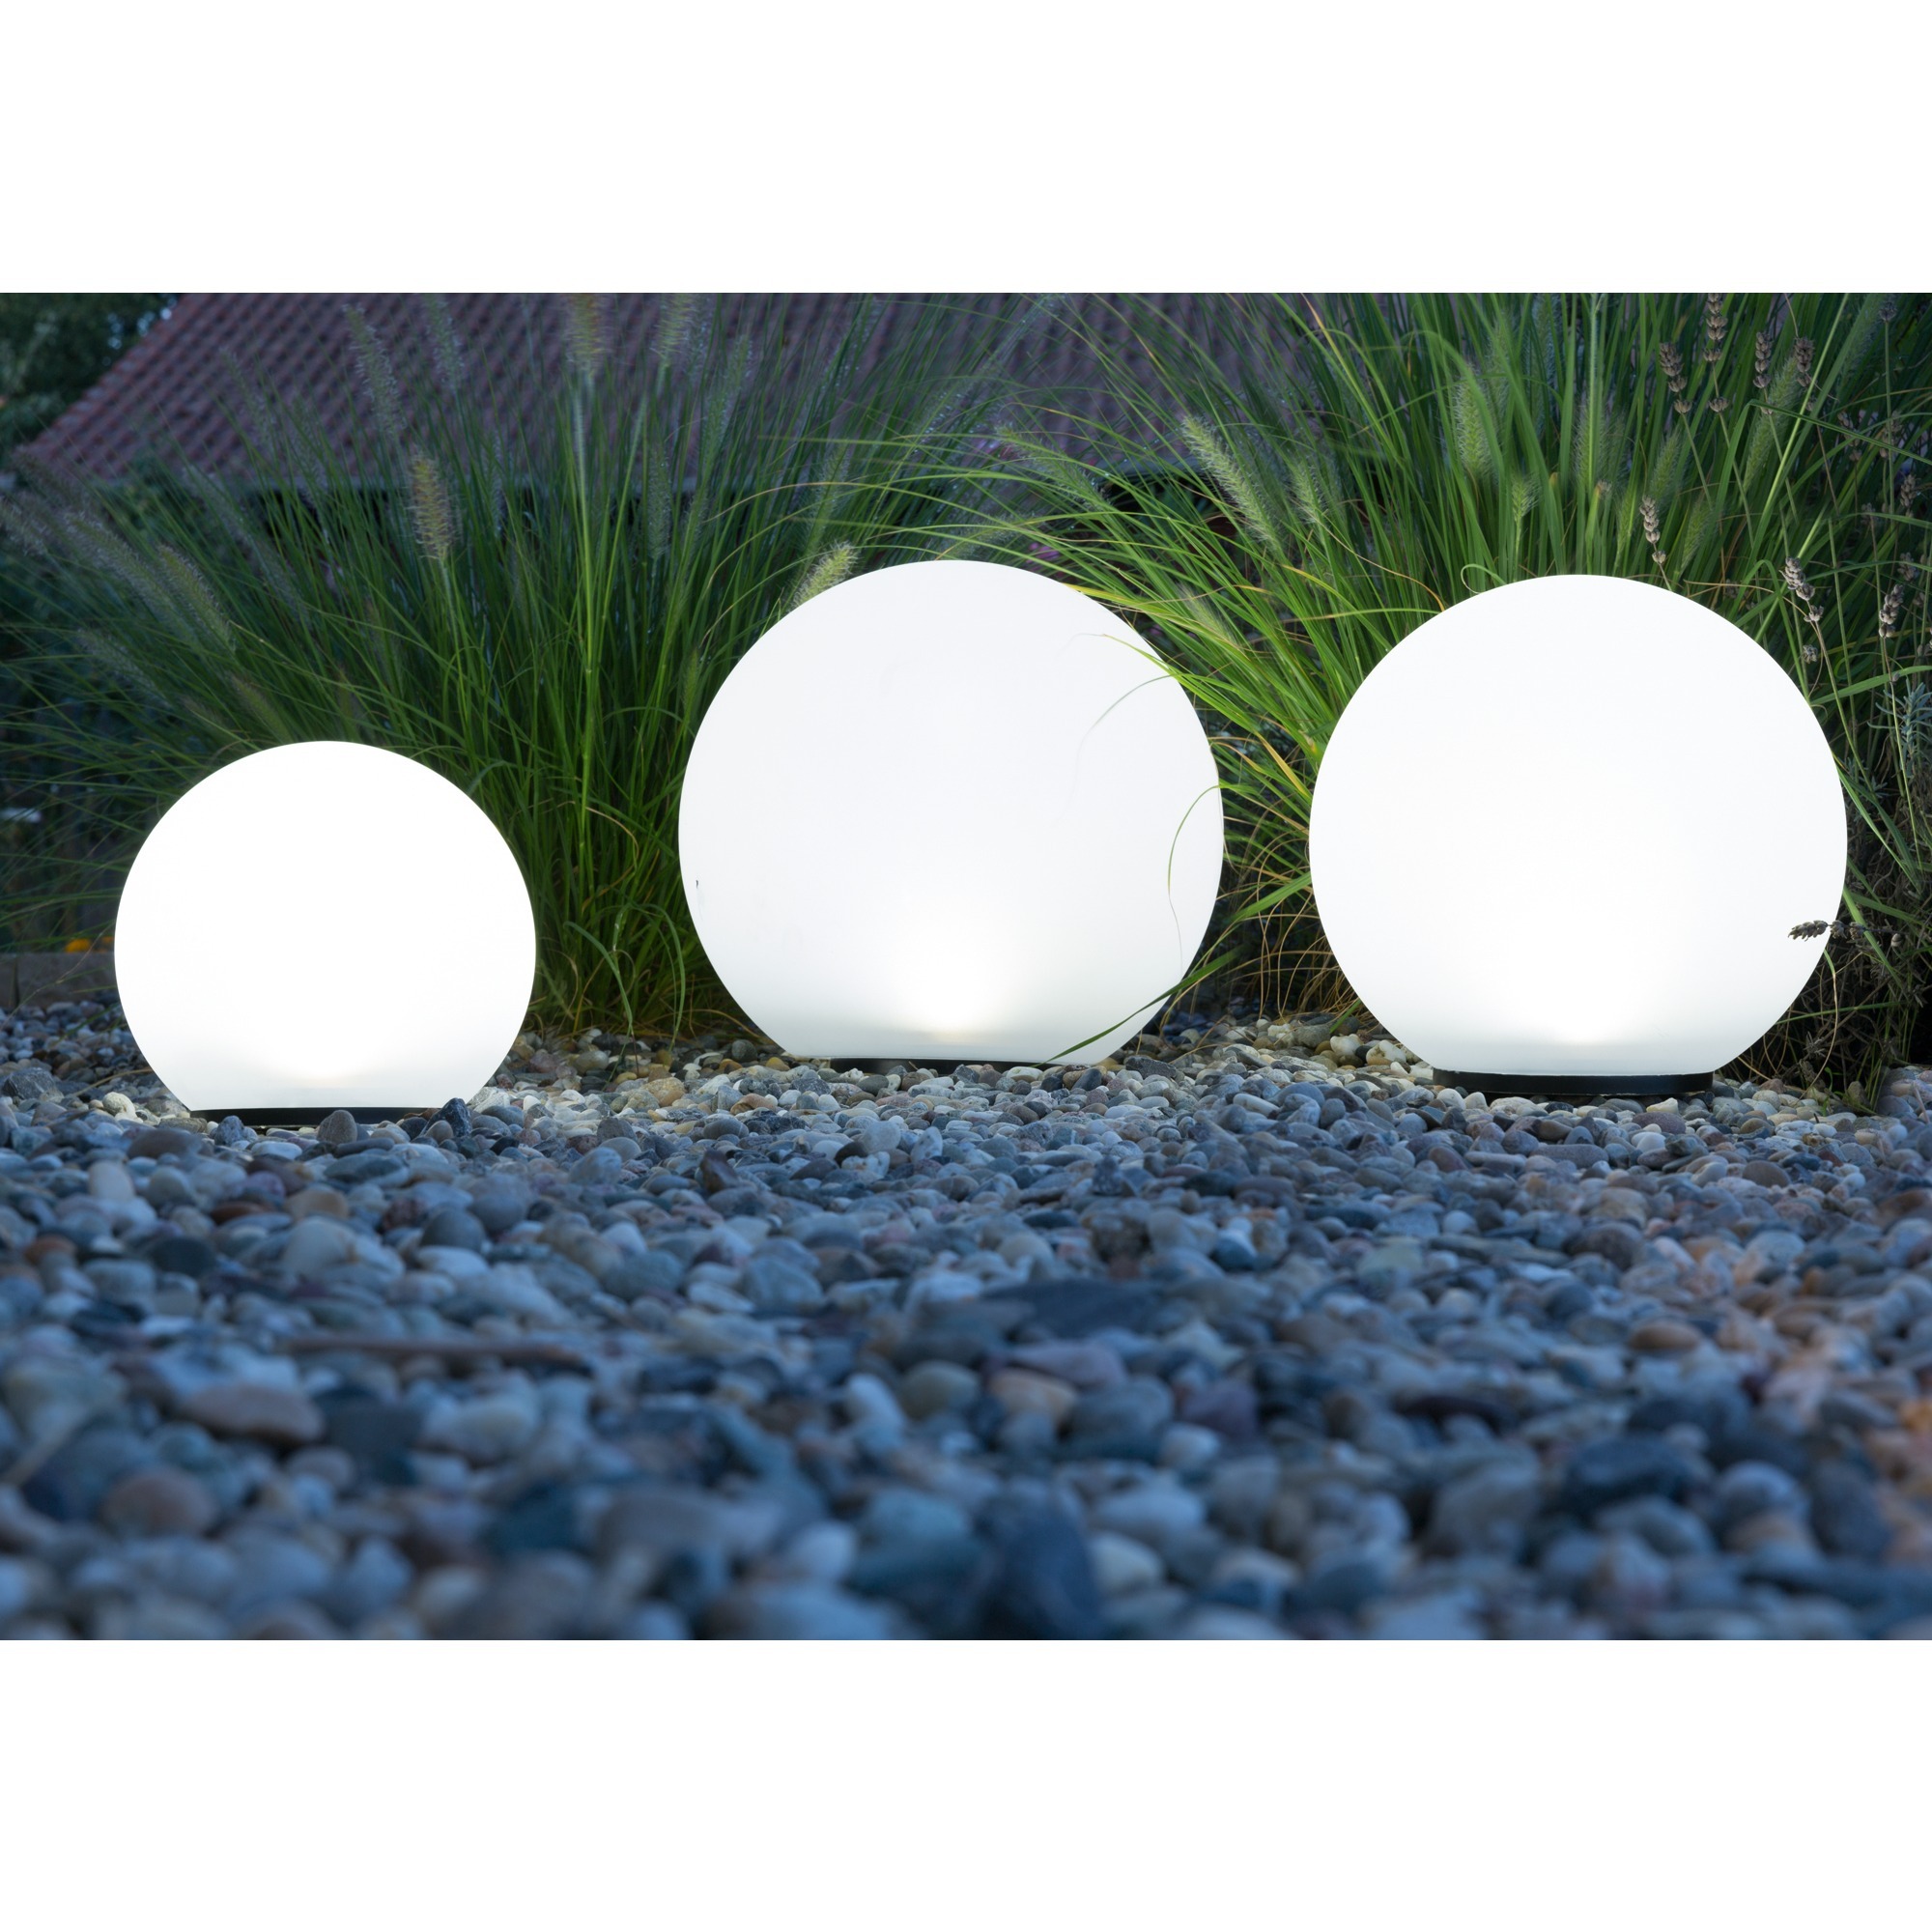 Image of Alternate - Solar LED-Kugeln Boule 3er-Set, LED-Leuchte online einkaufen bei Alternate